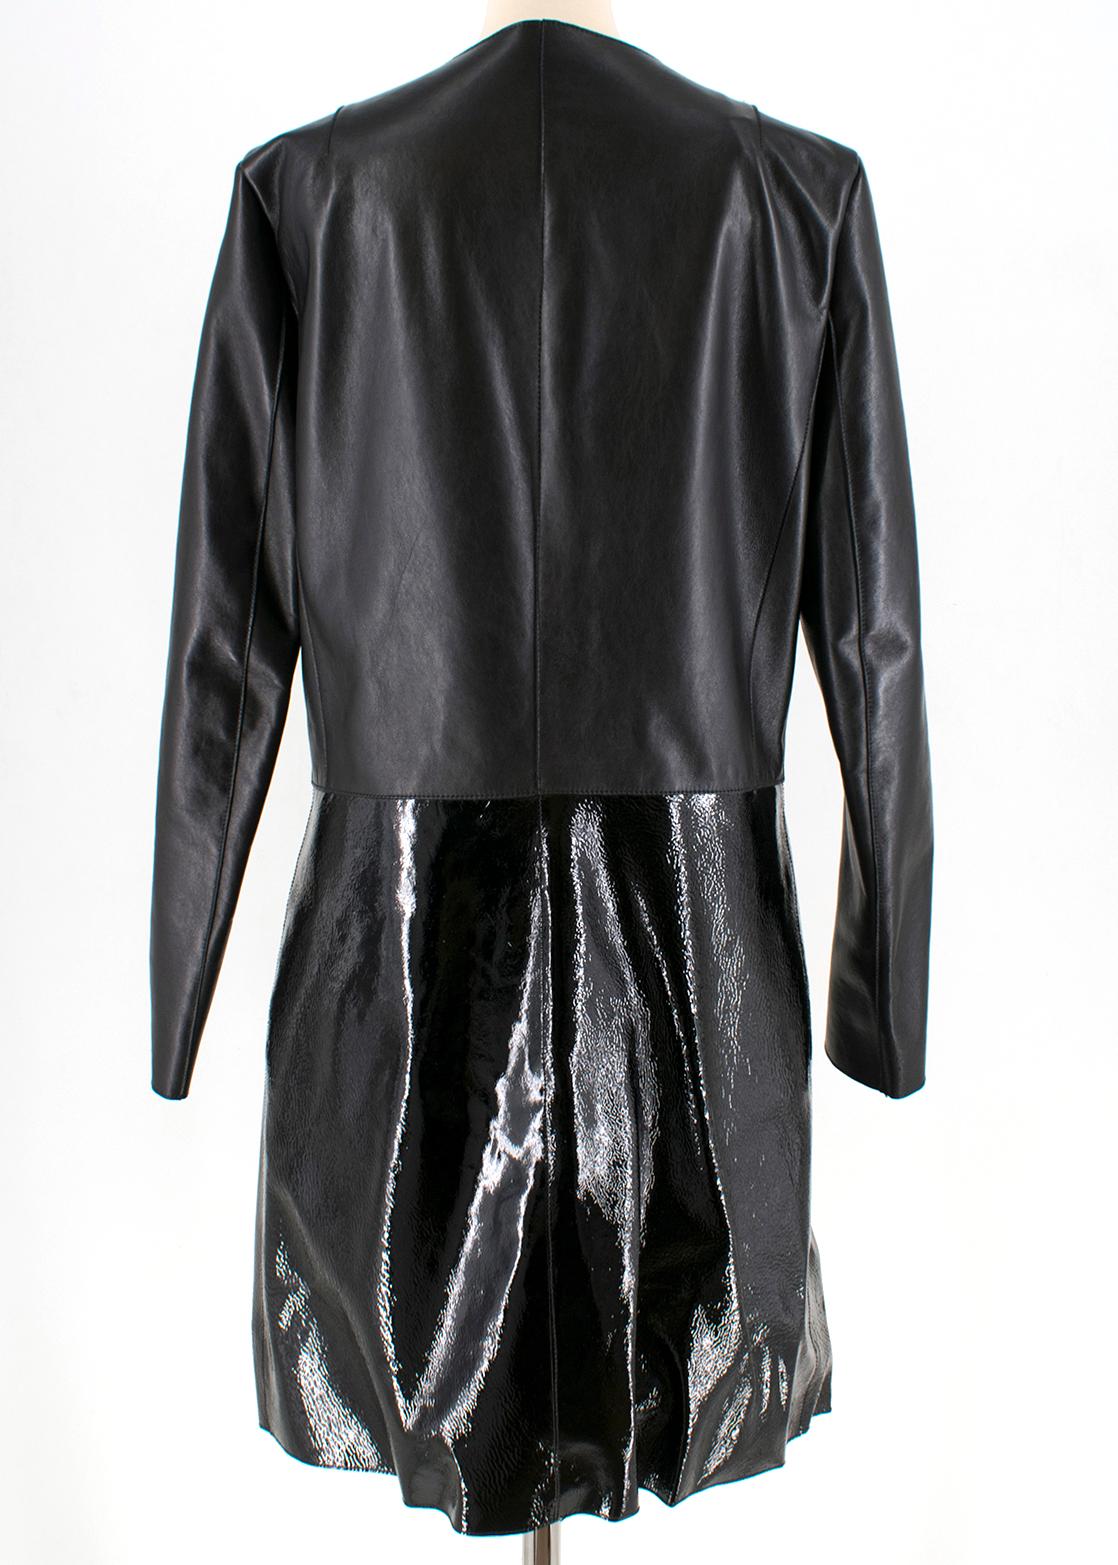 Fendi Black Leather Two Toned Coat - Size US 6 1